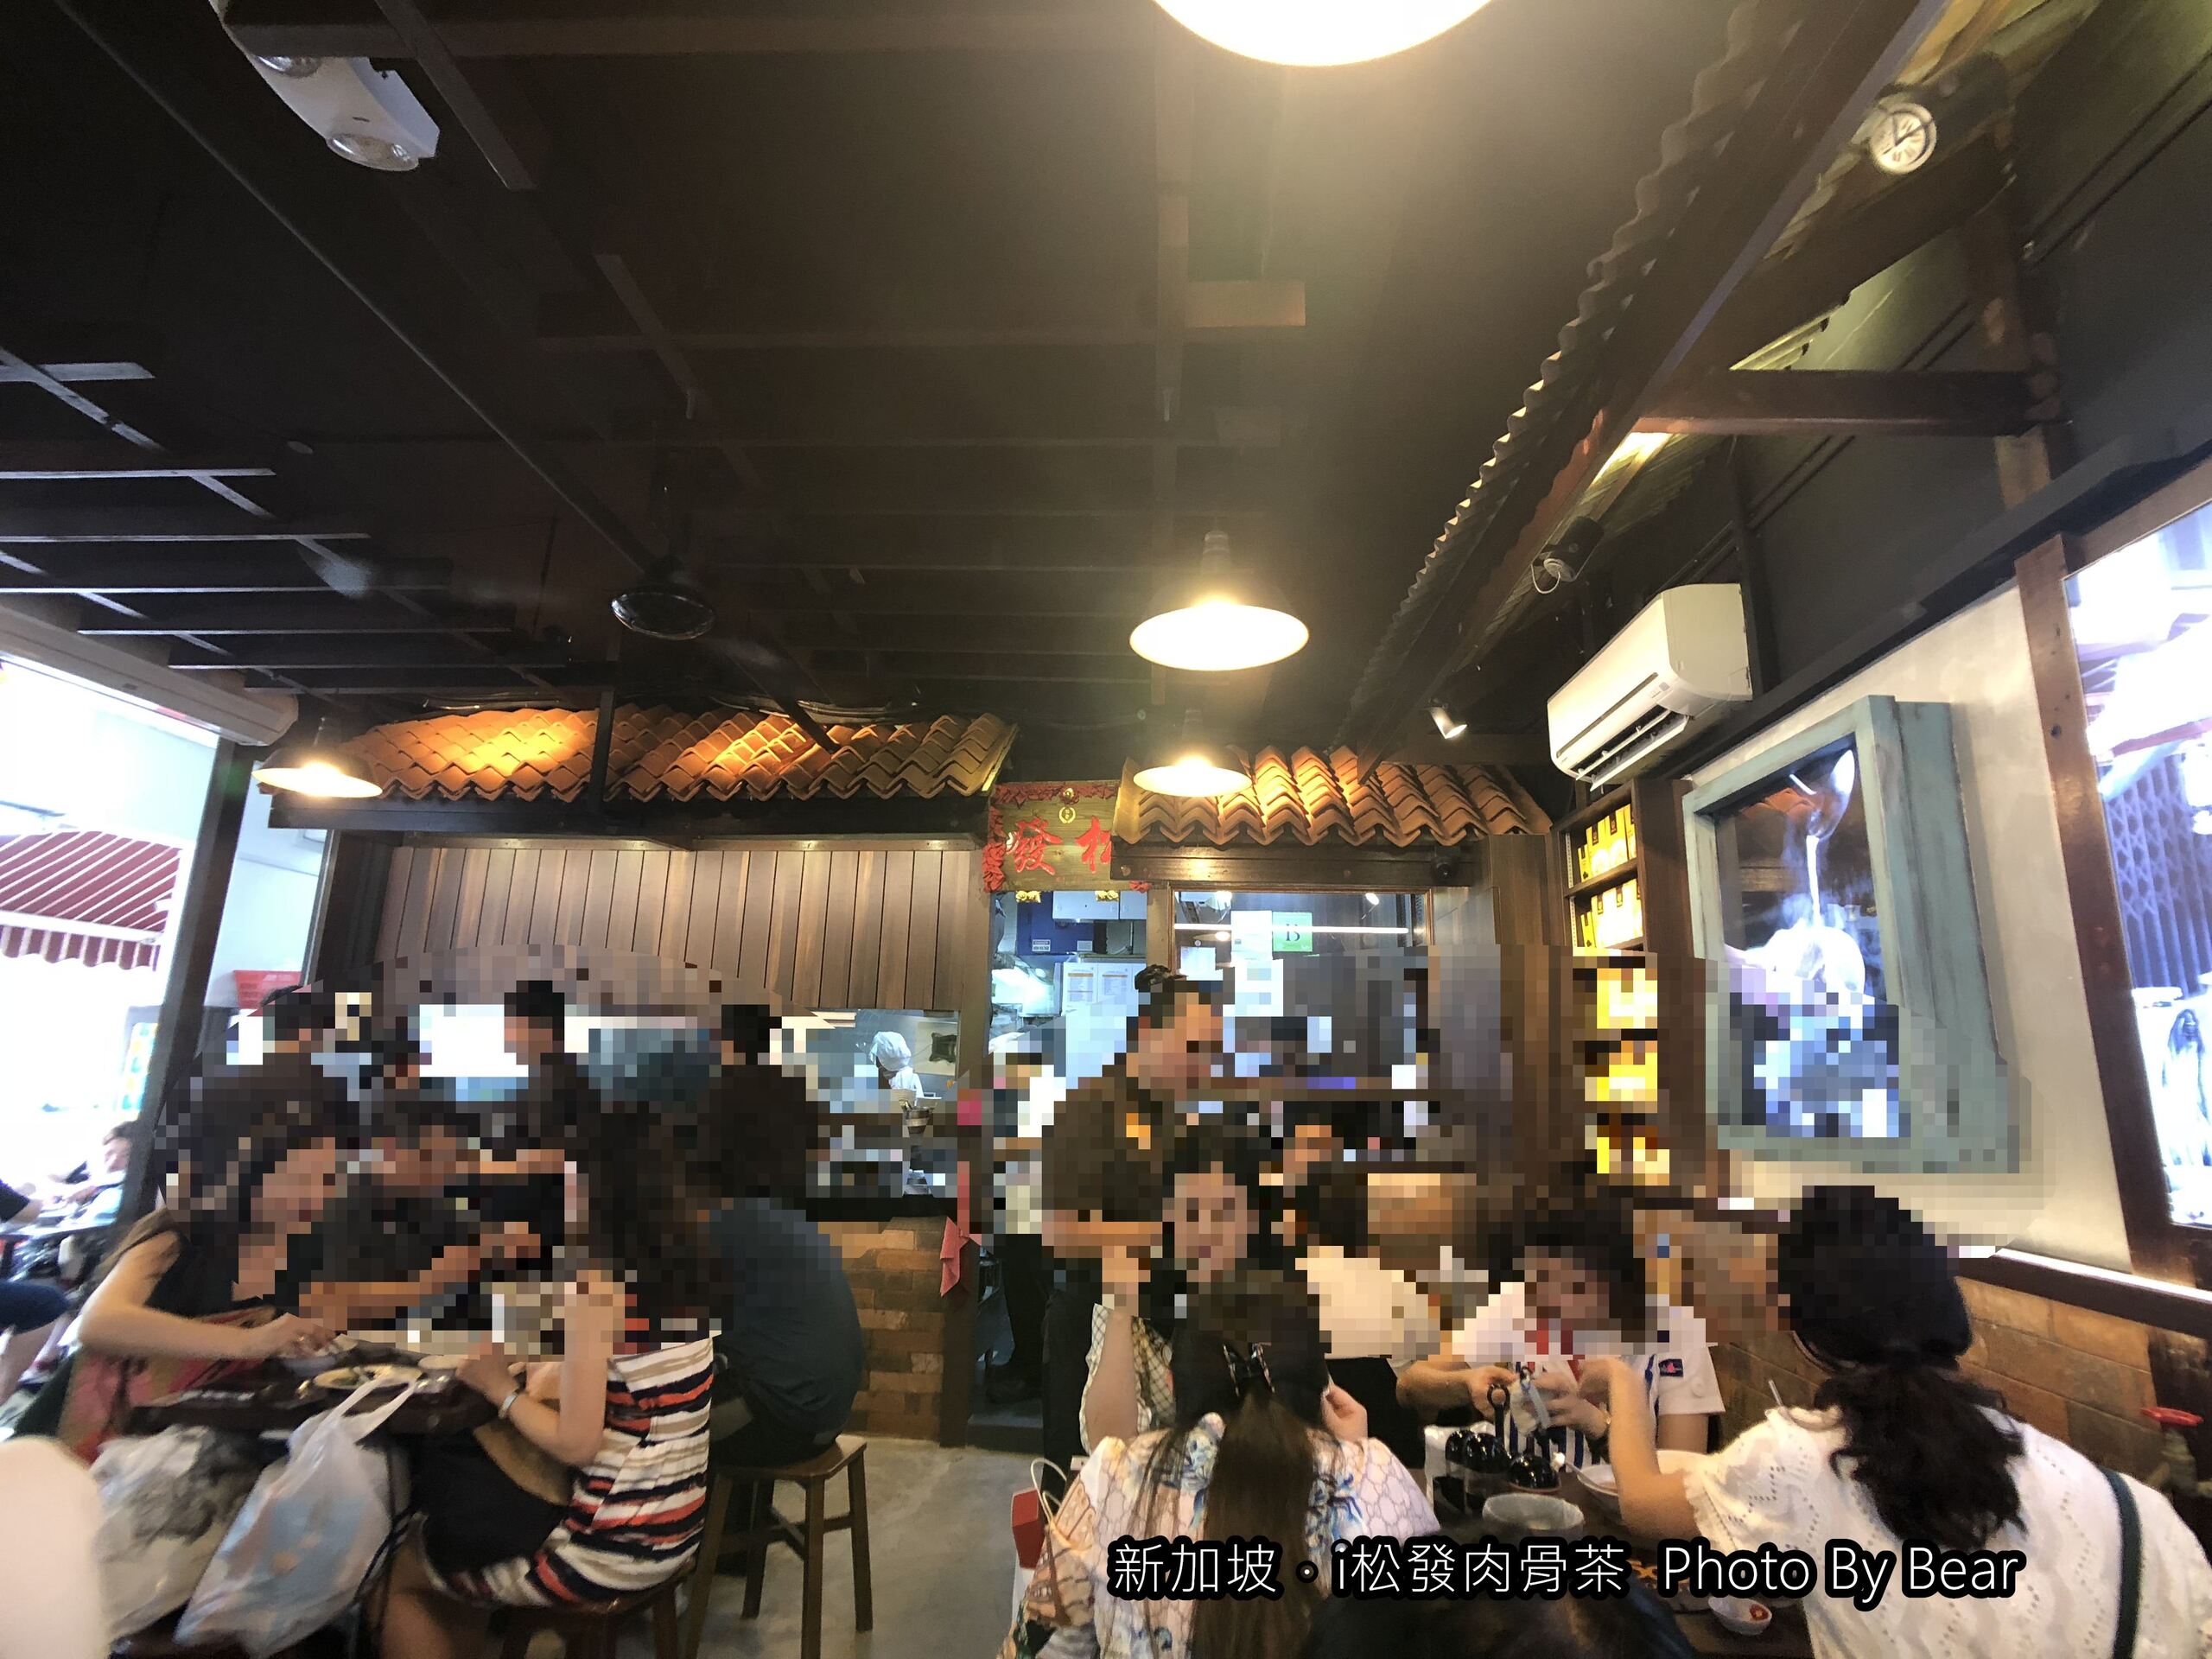 【2019新加坡自由行】「松發肉骨茶SONG FA（新加坡必吃/三大肉骨茶名店/烏節路)」